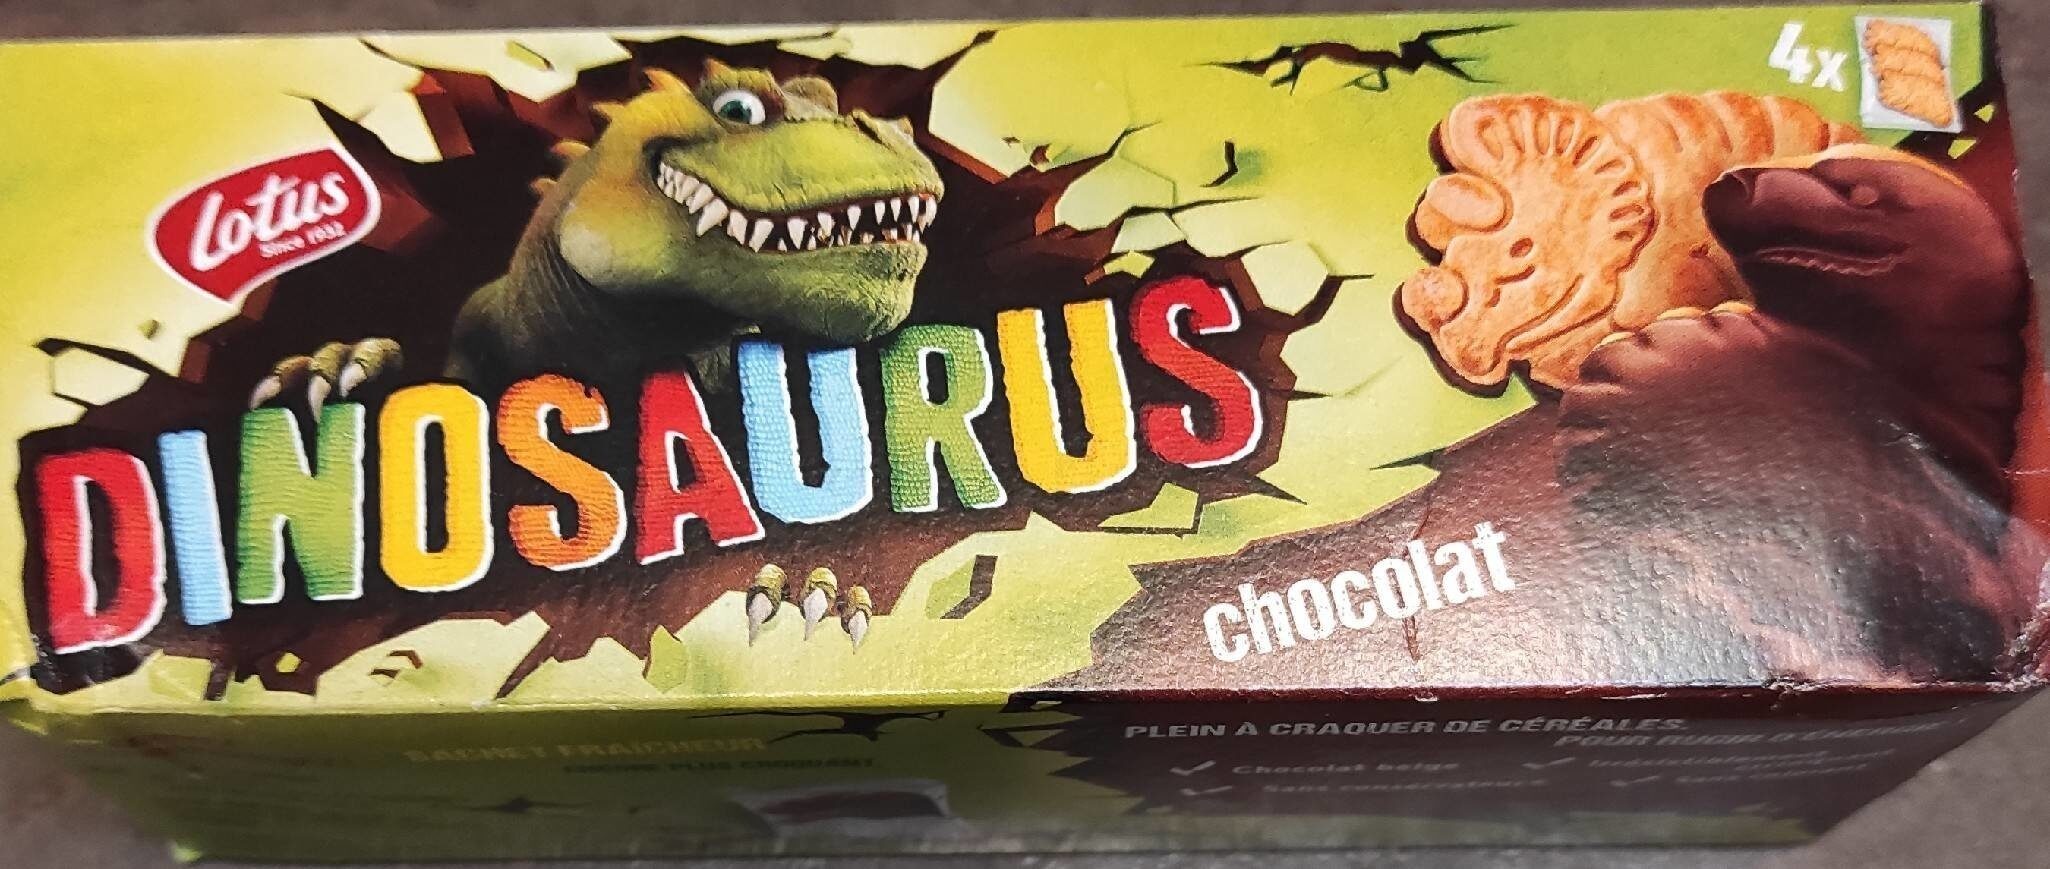 Dinosaurus chocolat - Produkt - fr